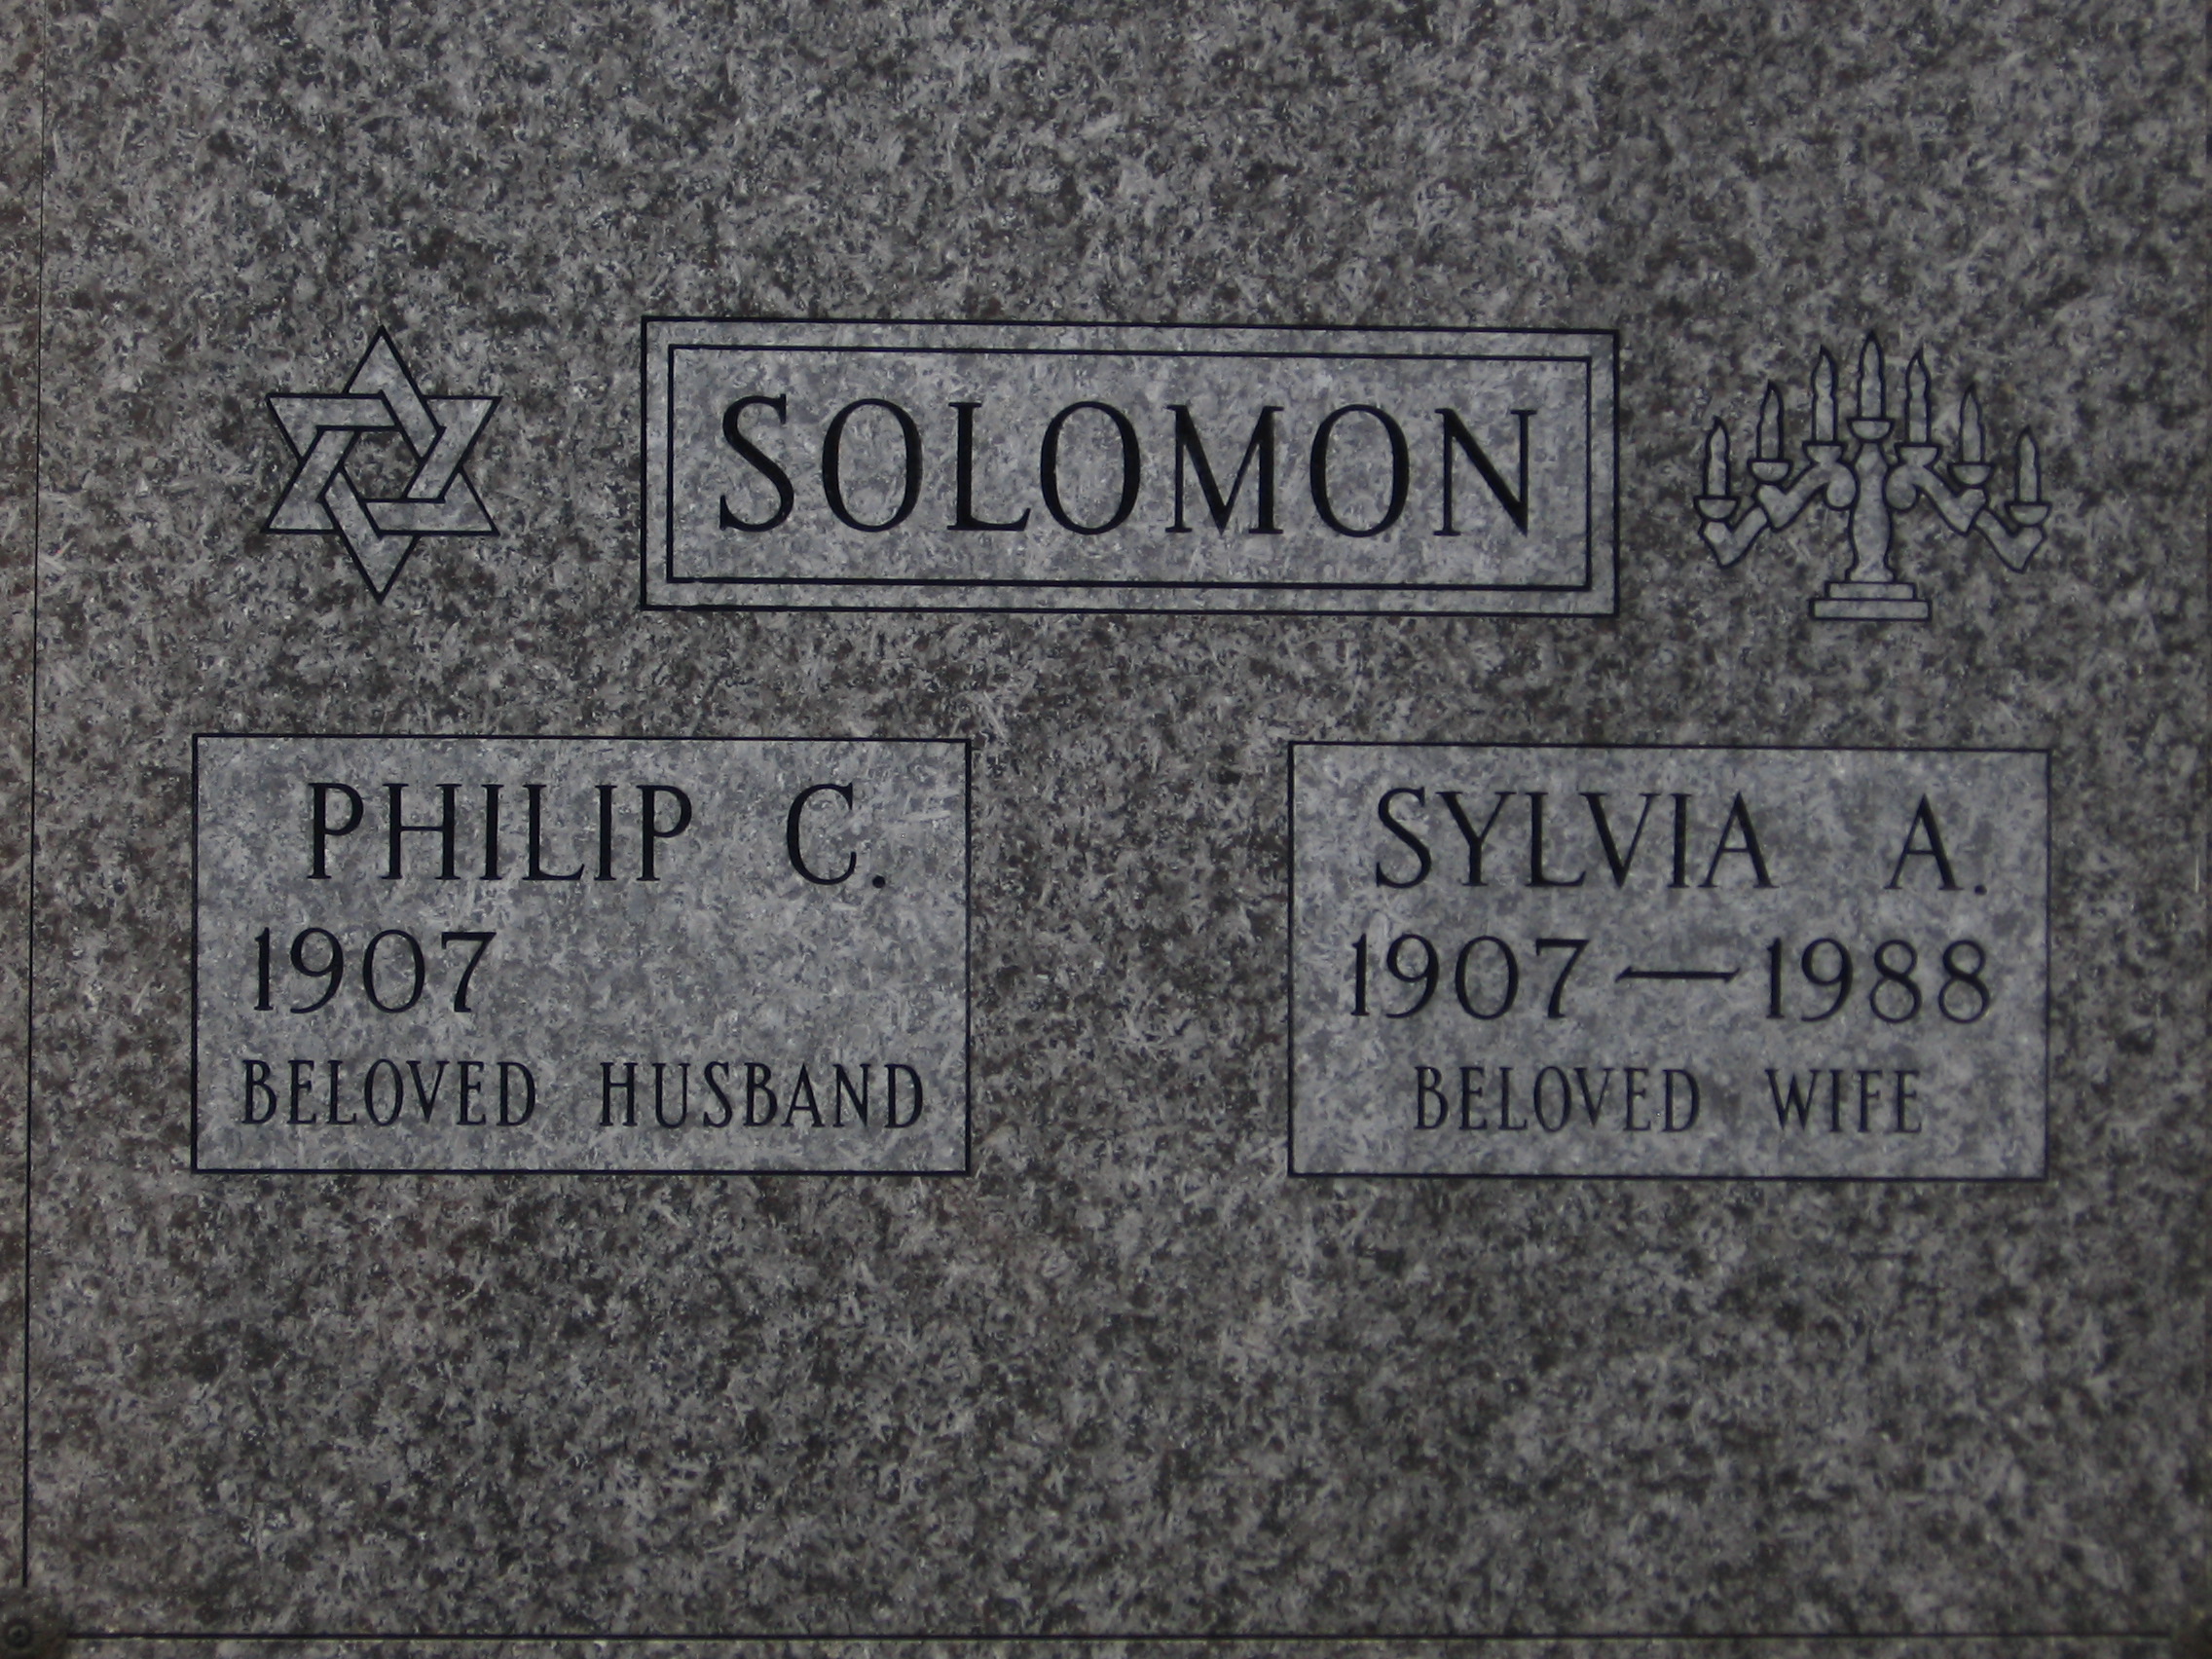 Philip C Solomon